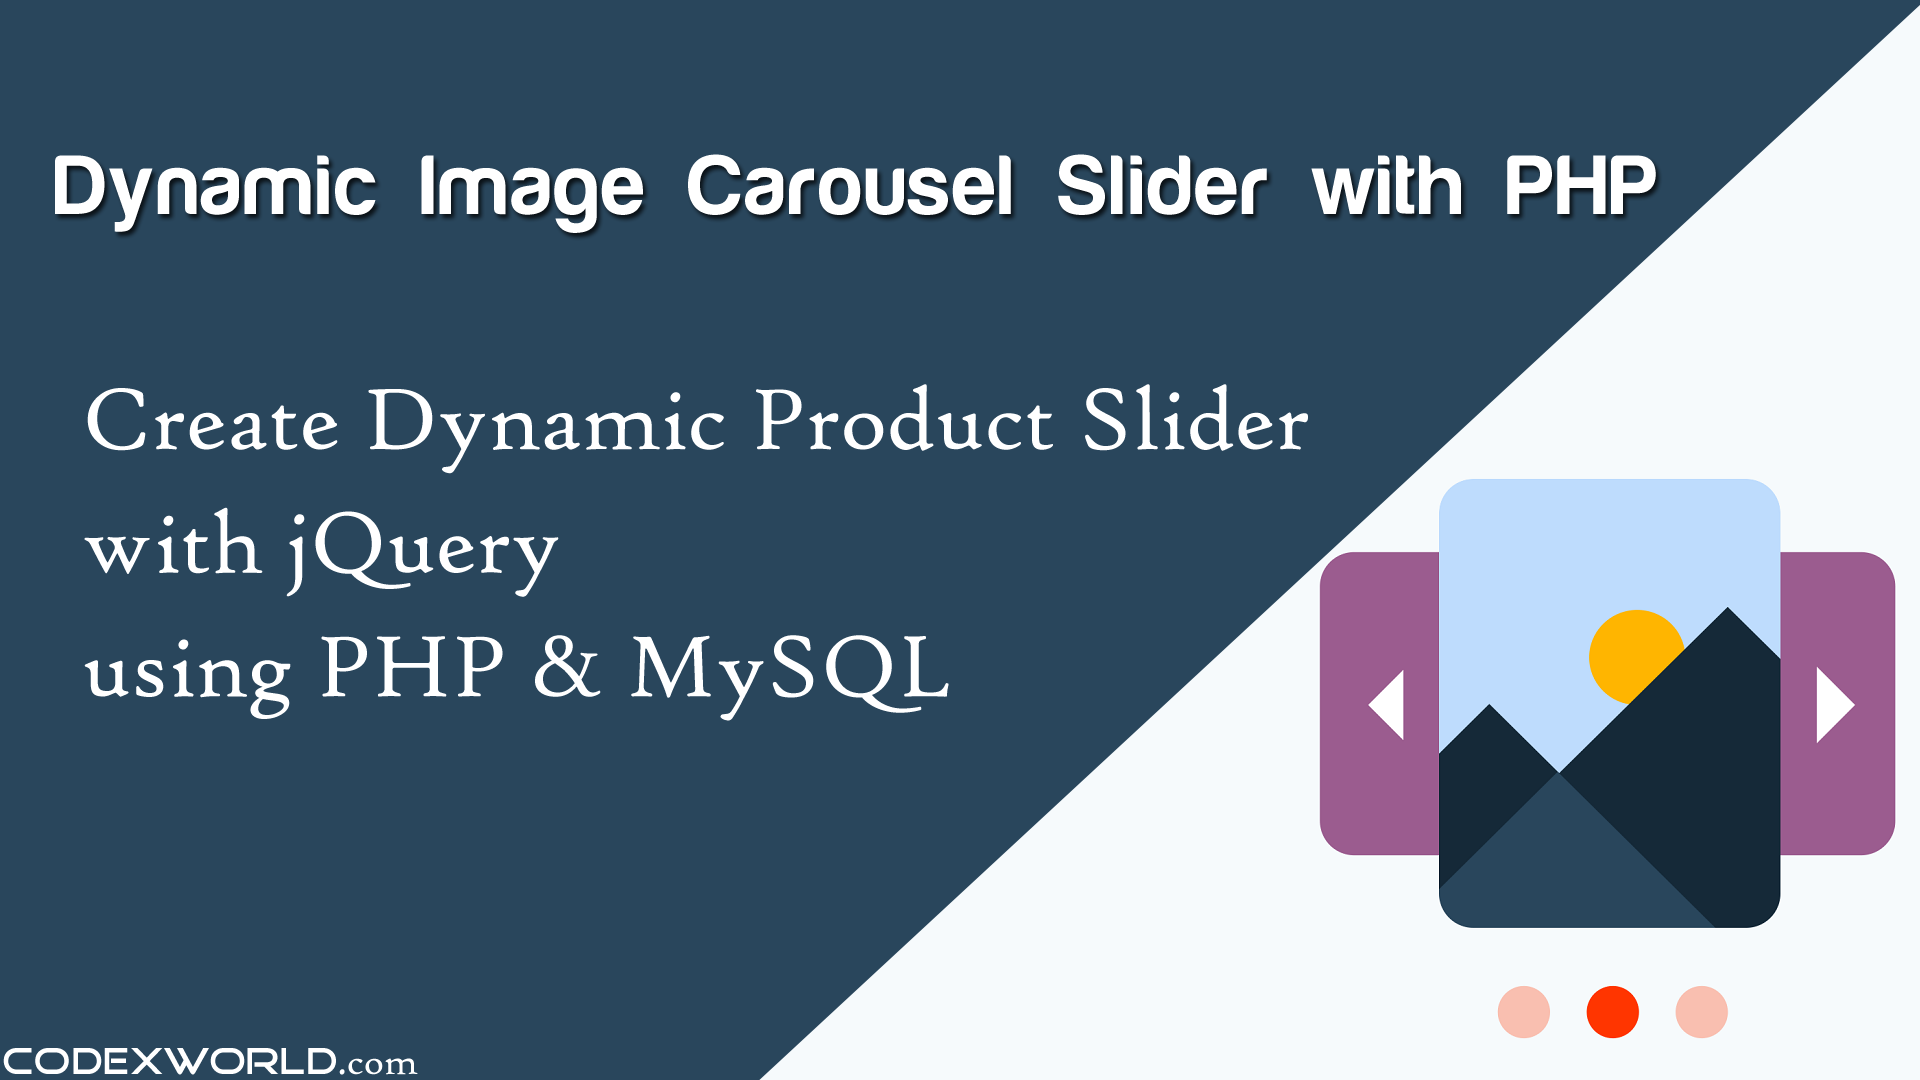 image slider html source code